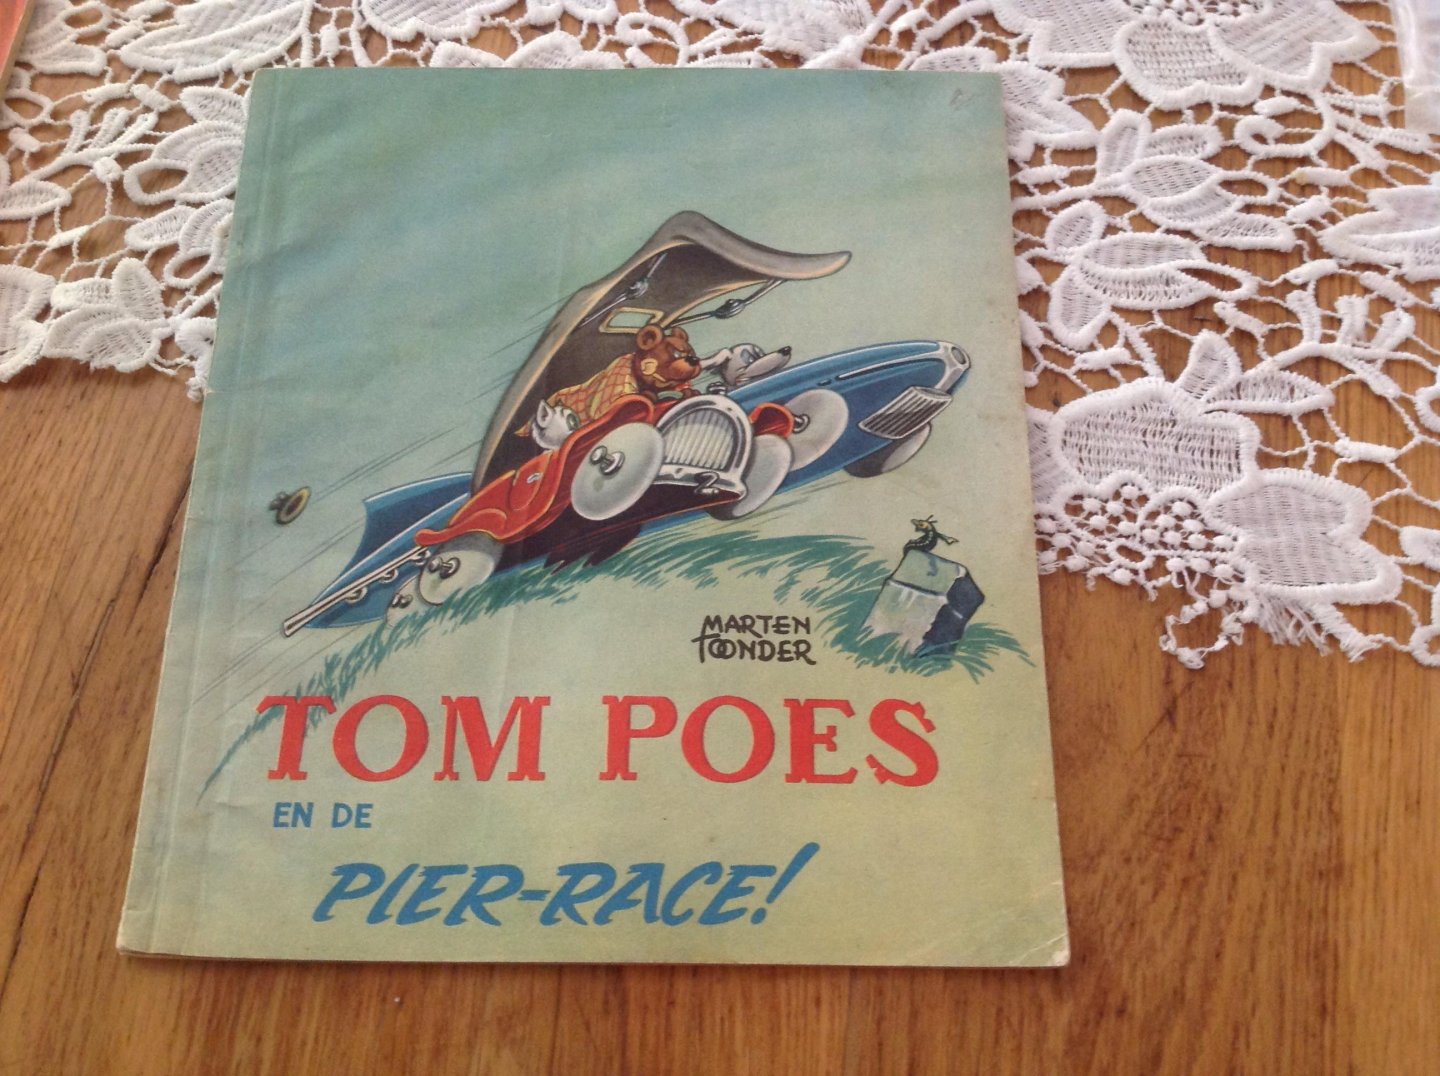 Marten Toonder - Tom Poes en de Pier-Race!